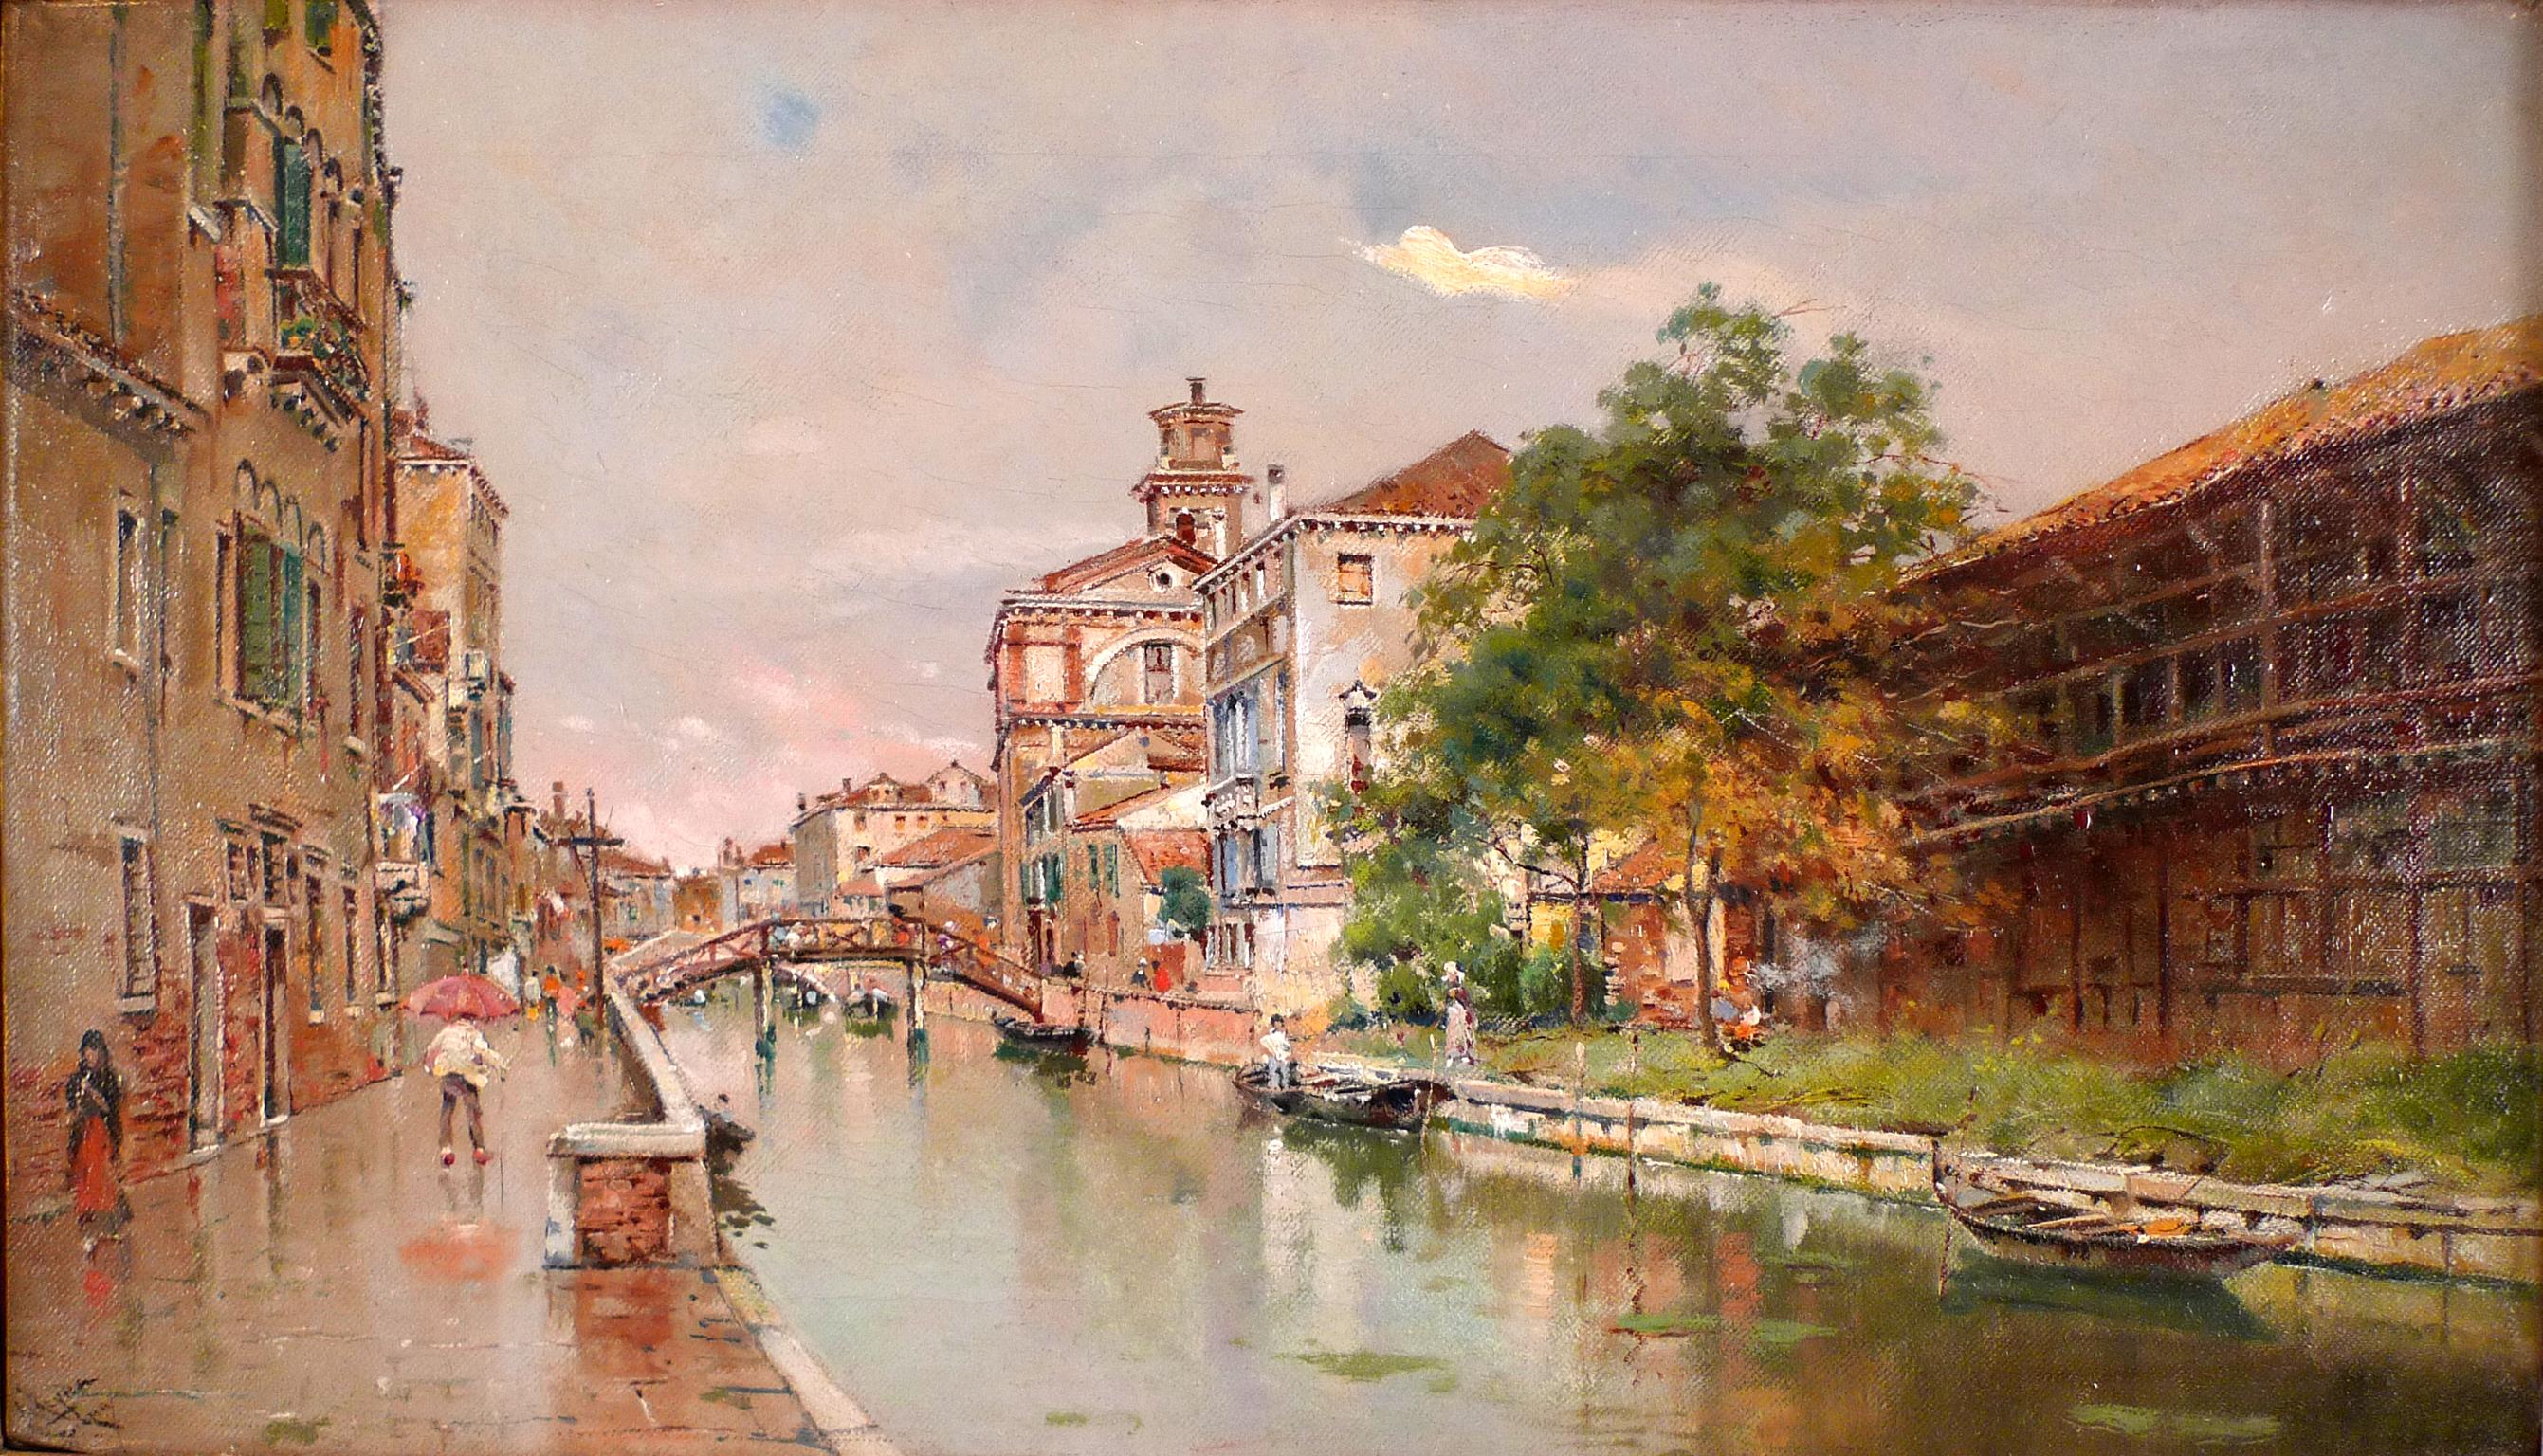 "Canal vénitien" Fin du 19e siècle Huile sur toile de l'artiste espagnol Antonio Reyna